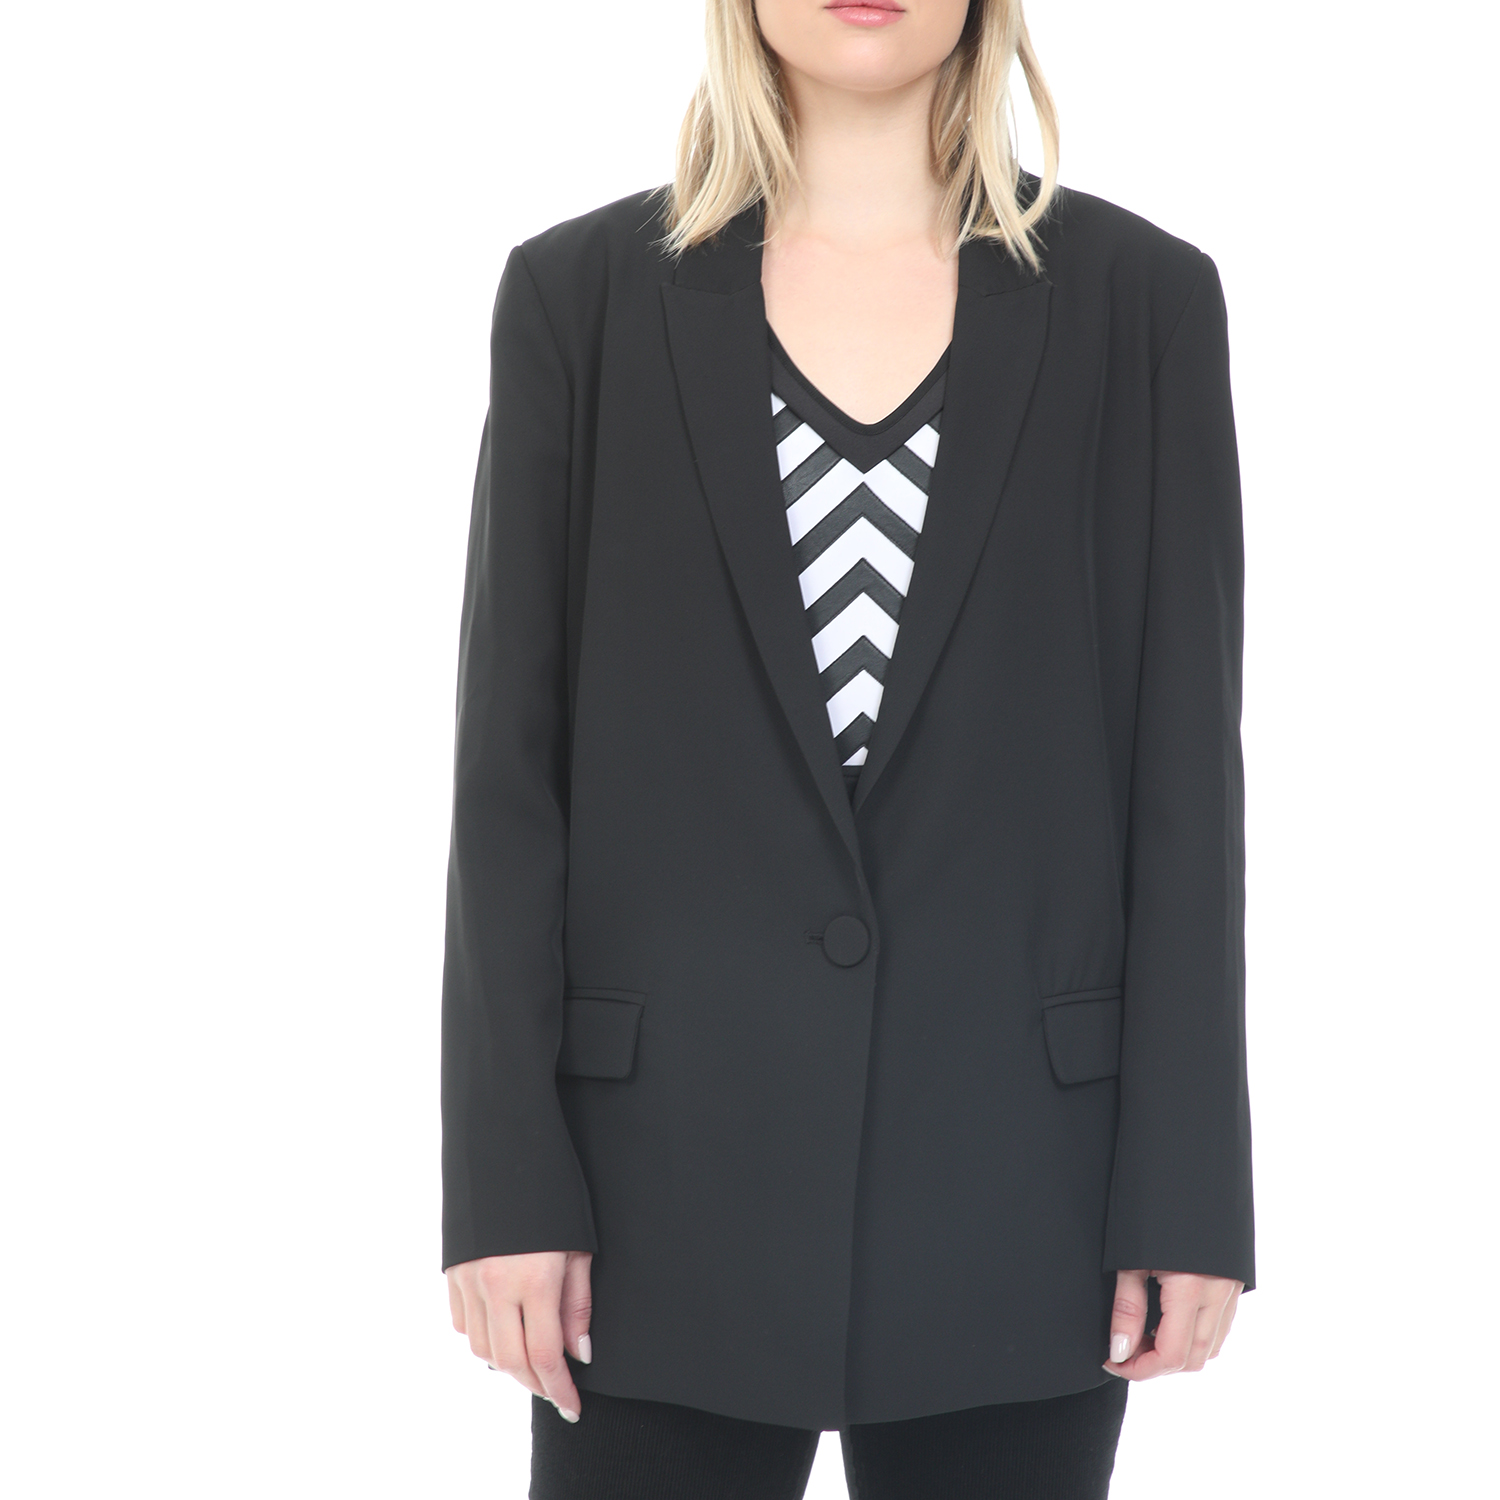 Γυναικεία/Ρούχα/Πανωφόρια/Σακάκια NENETTE - Γυναικείο σακάκι blazer NENETE BACARO GIACCA TRICOTTINA μαύρο